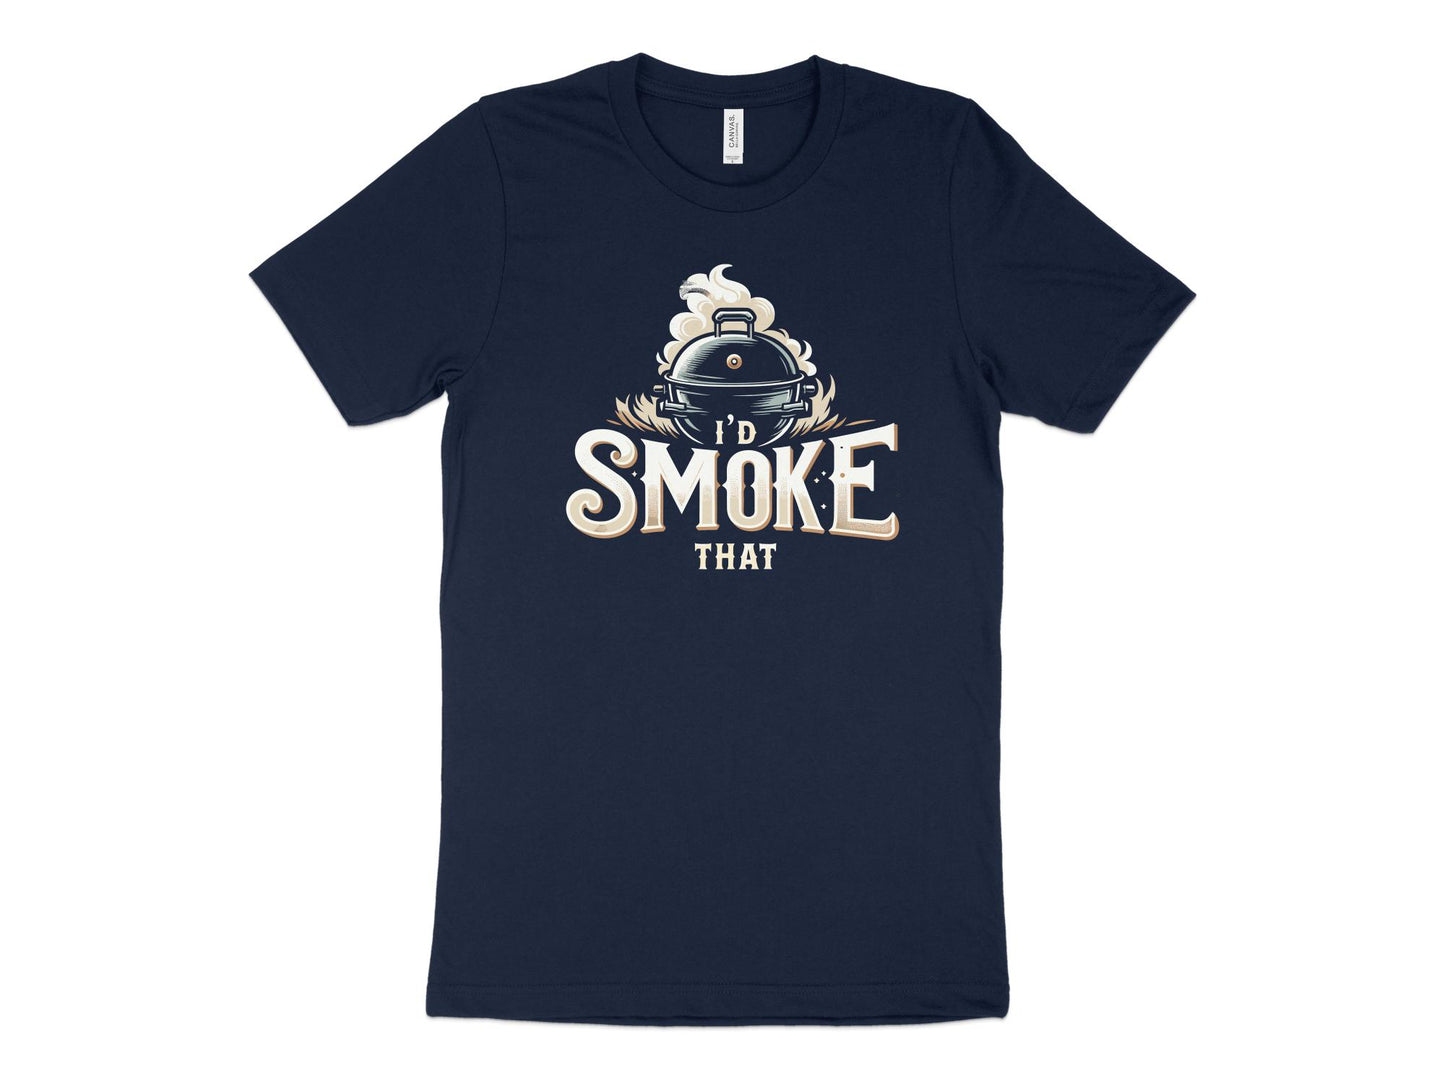 I'd Smoke That Shirt, navy blue